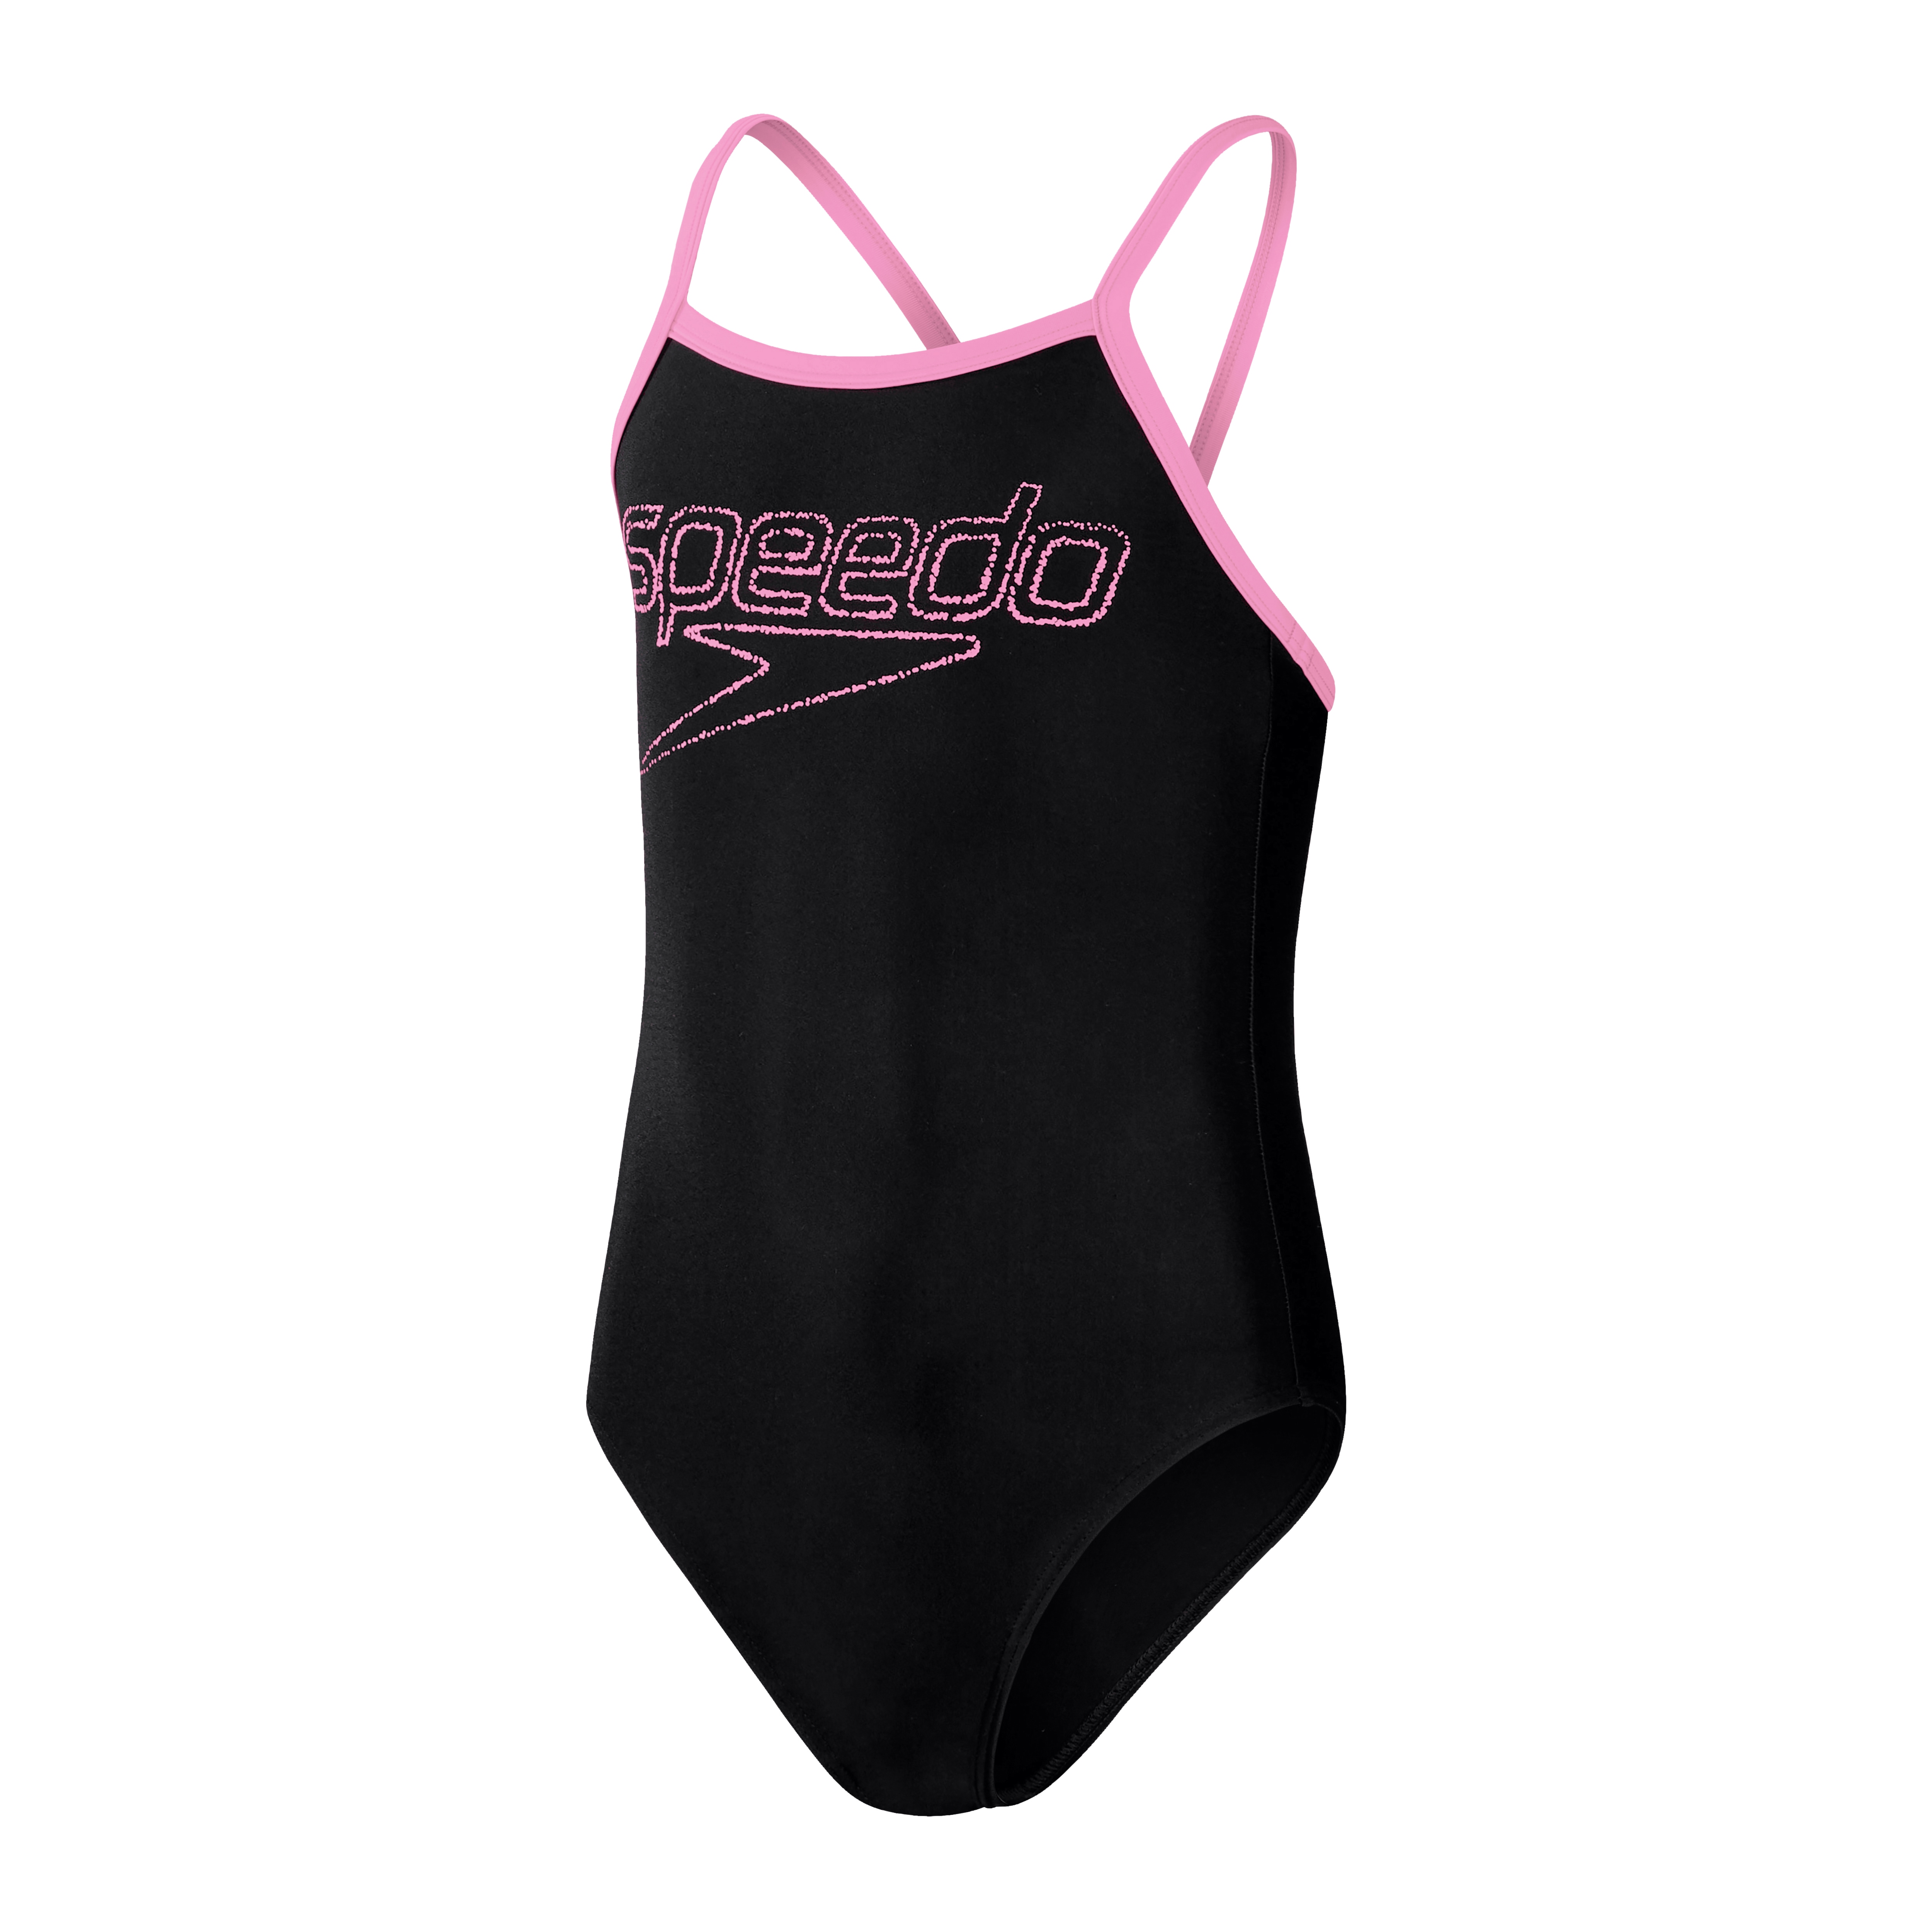 Speedo Muscleback-Badeanzug für Mädchen mit dünnen Trägern und Logo, Schwarz/Taffy Pink, 5-6 Jahre